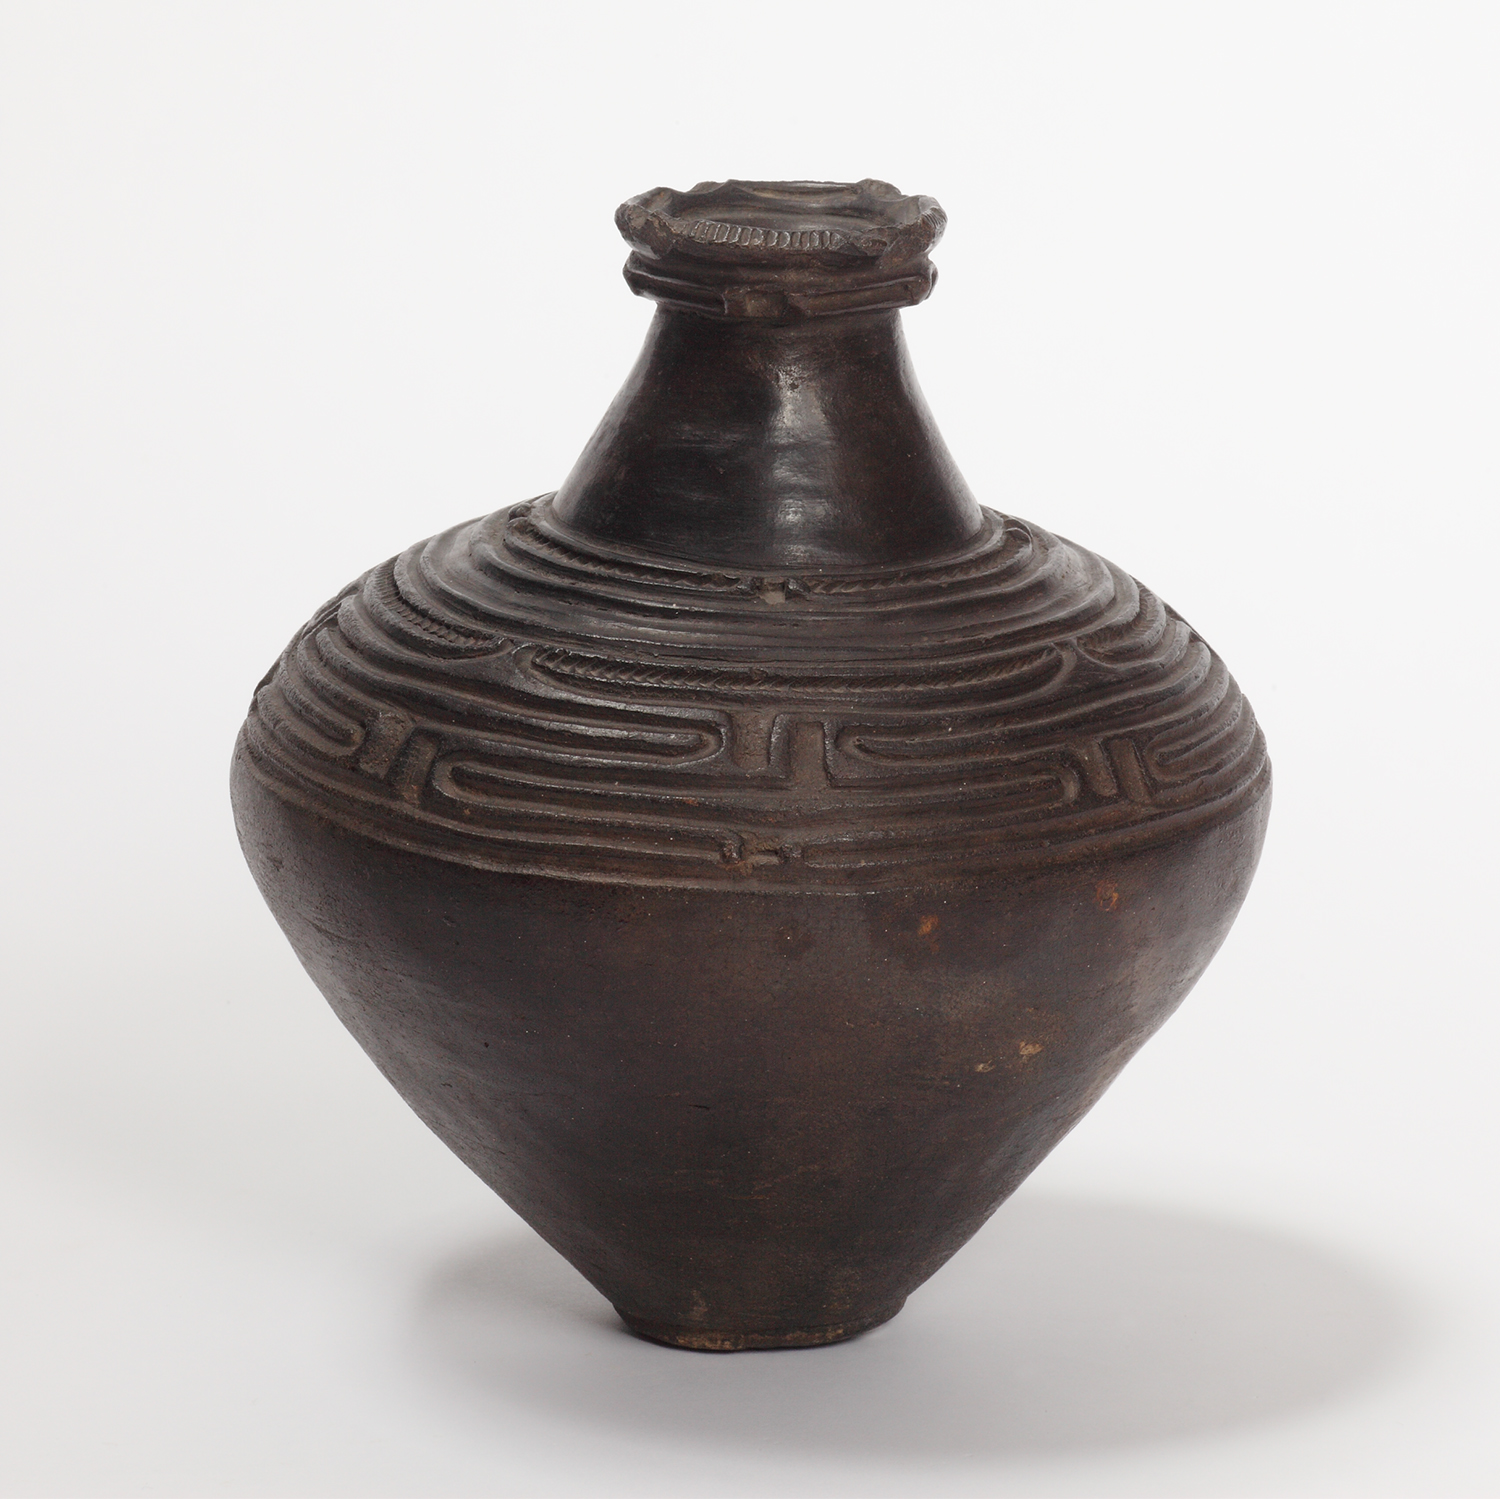 Pot-shaped earthenware